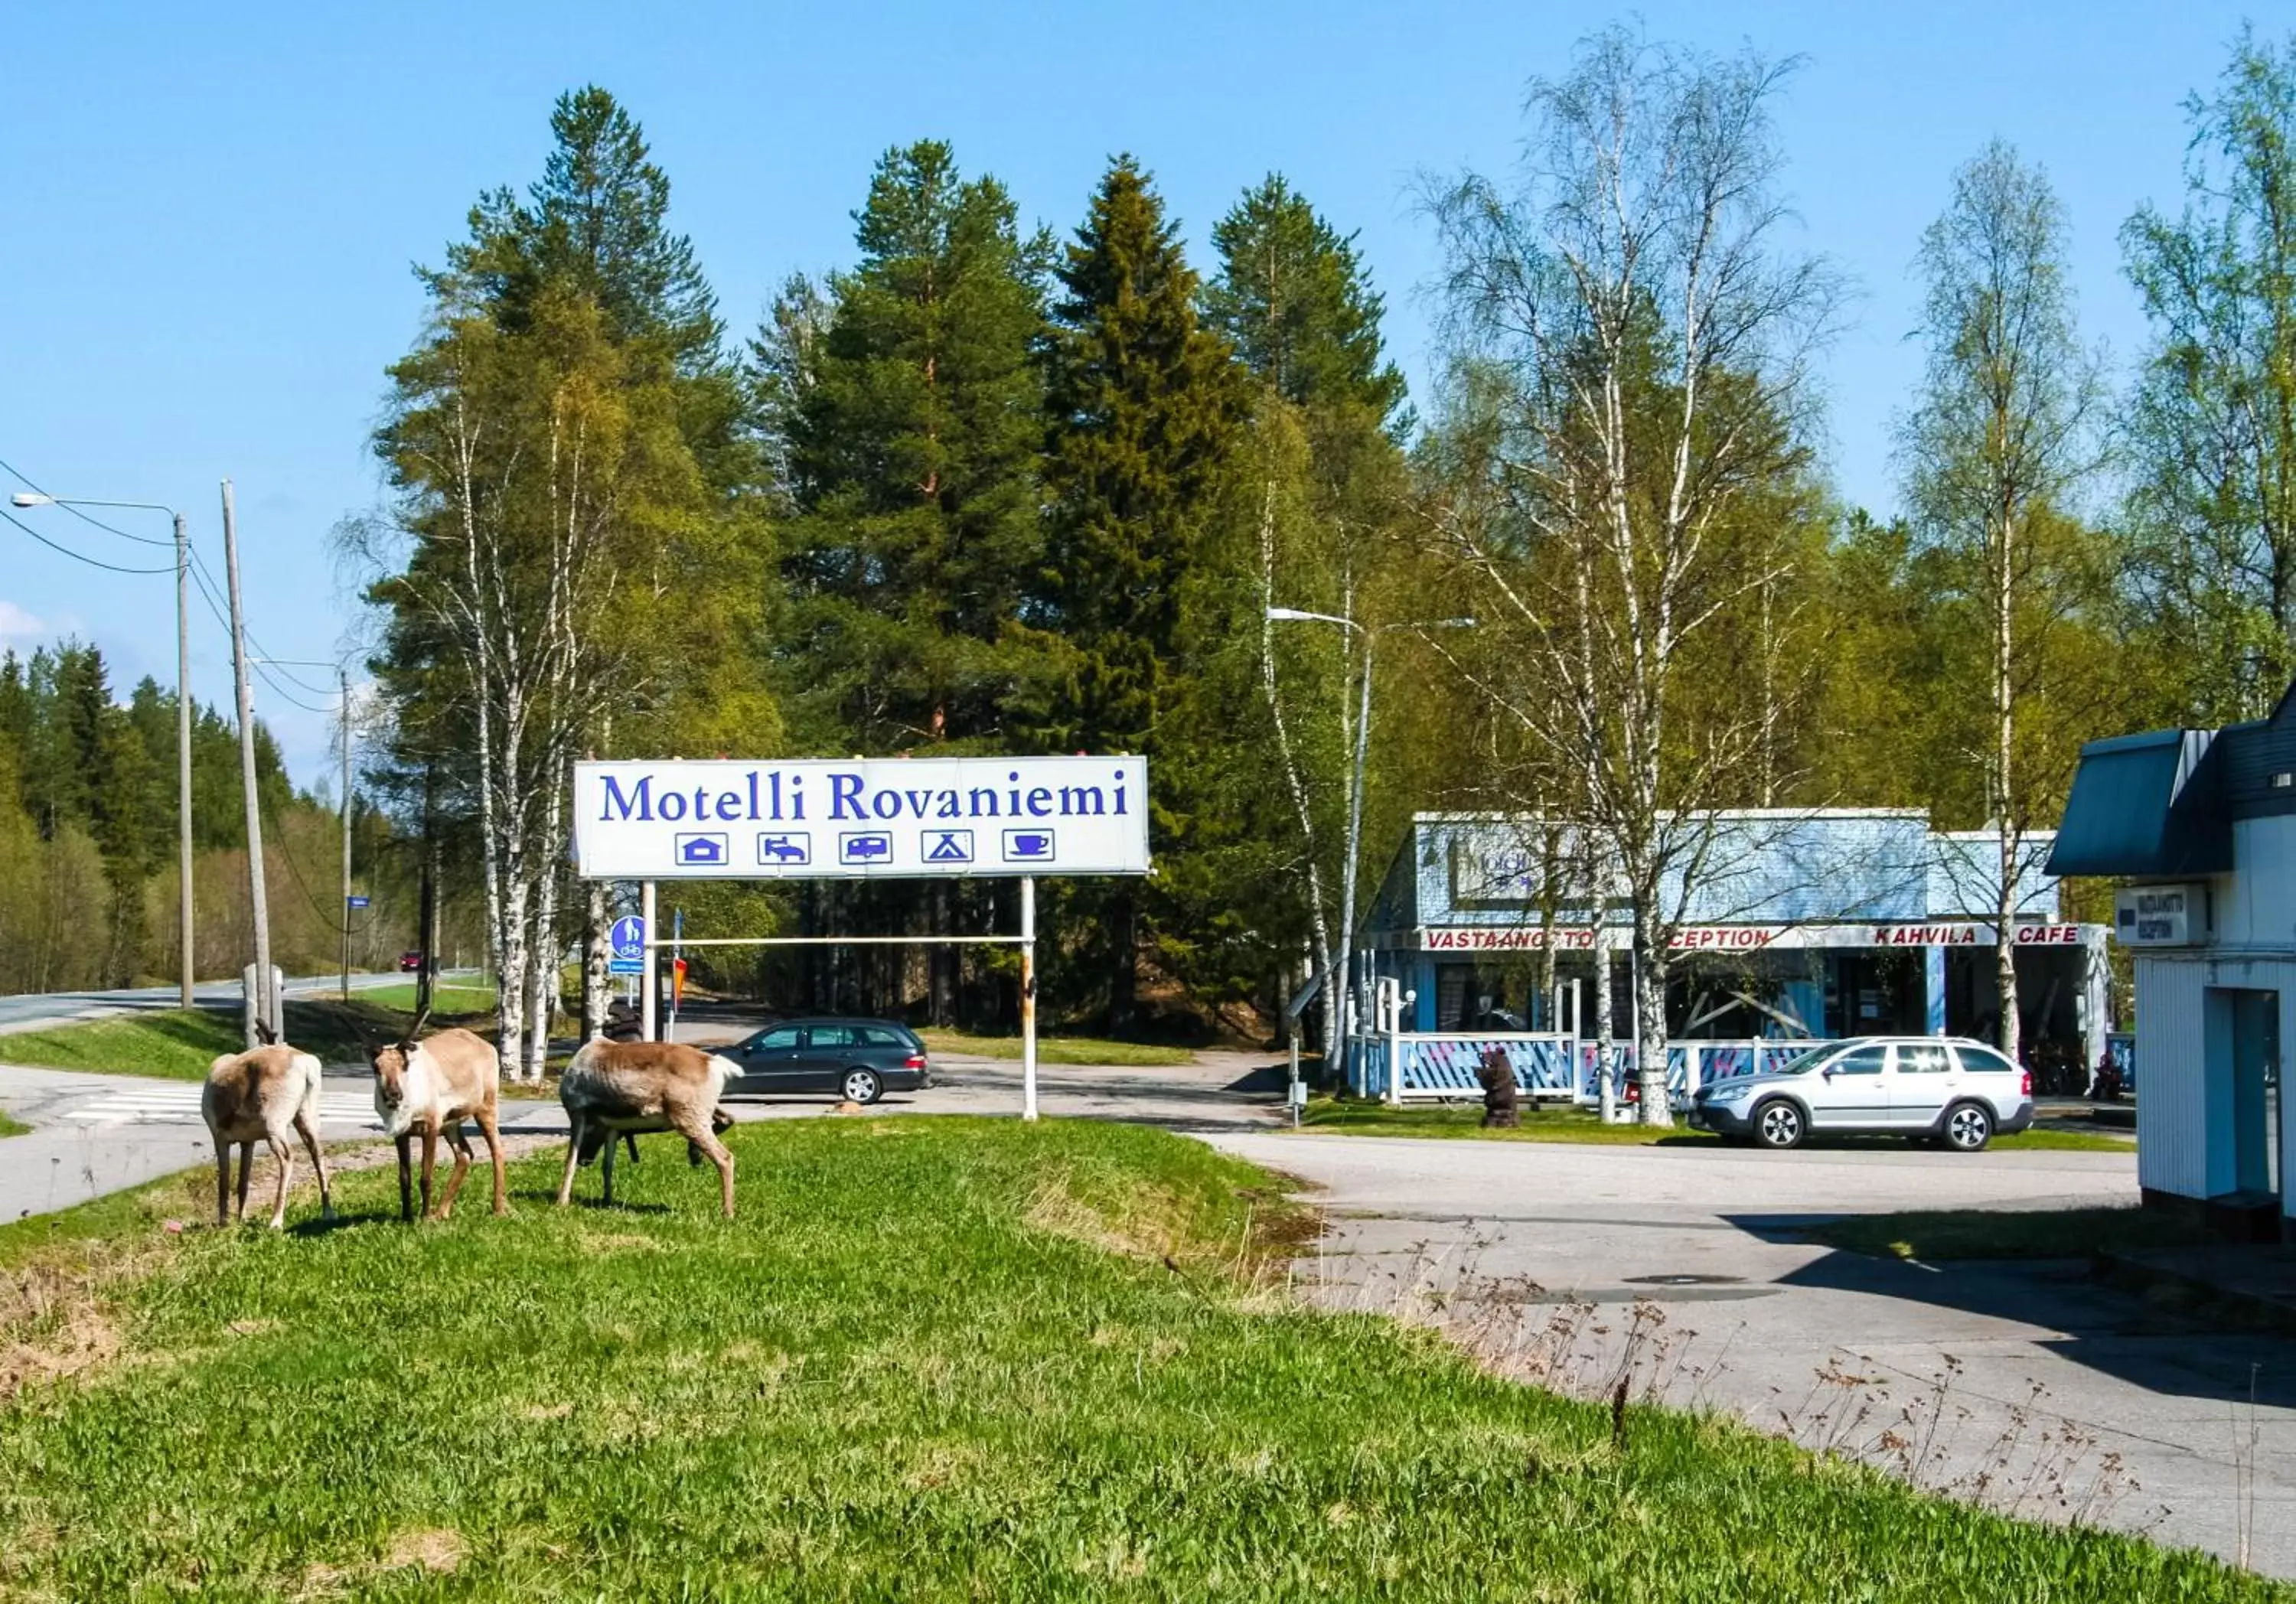 Animals in Motelli Rovaniemi